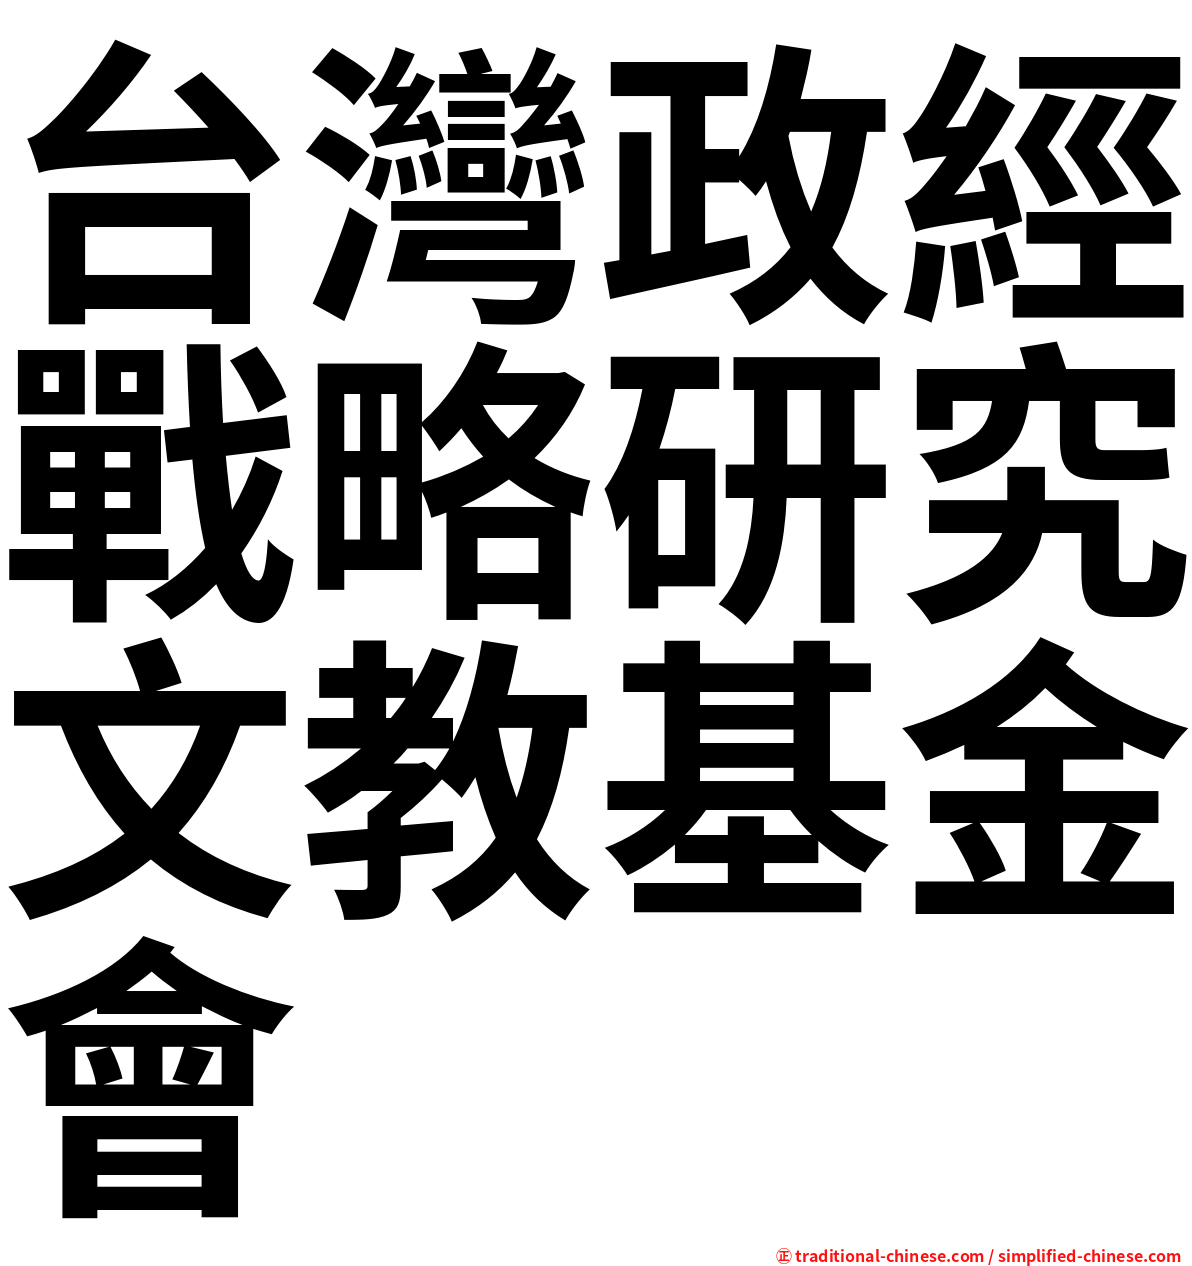 台灣政經戰略研究文教基金會